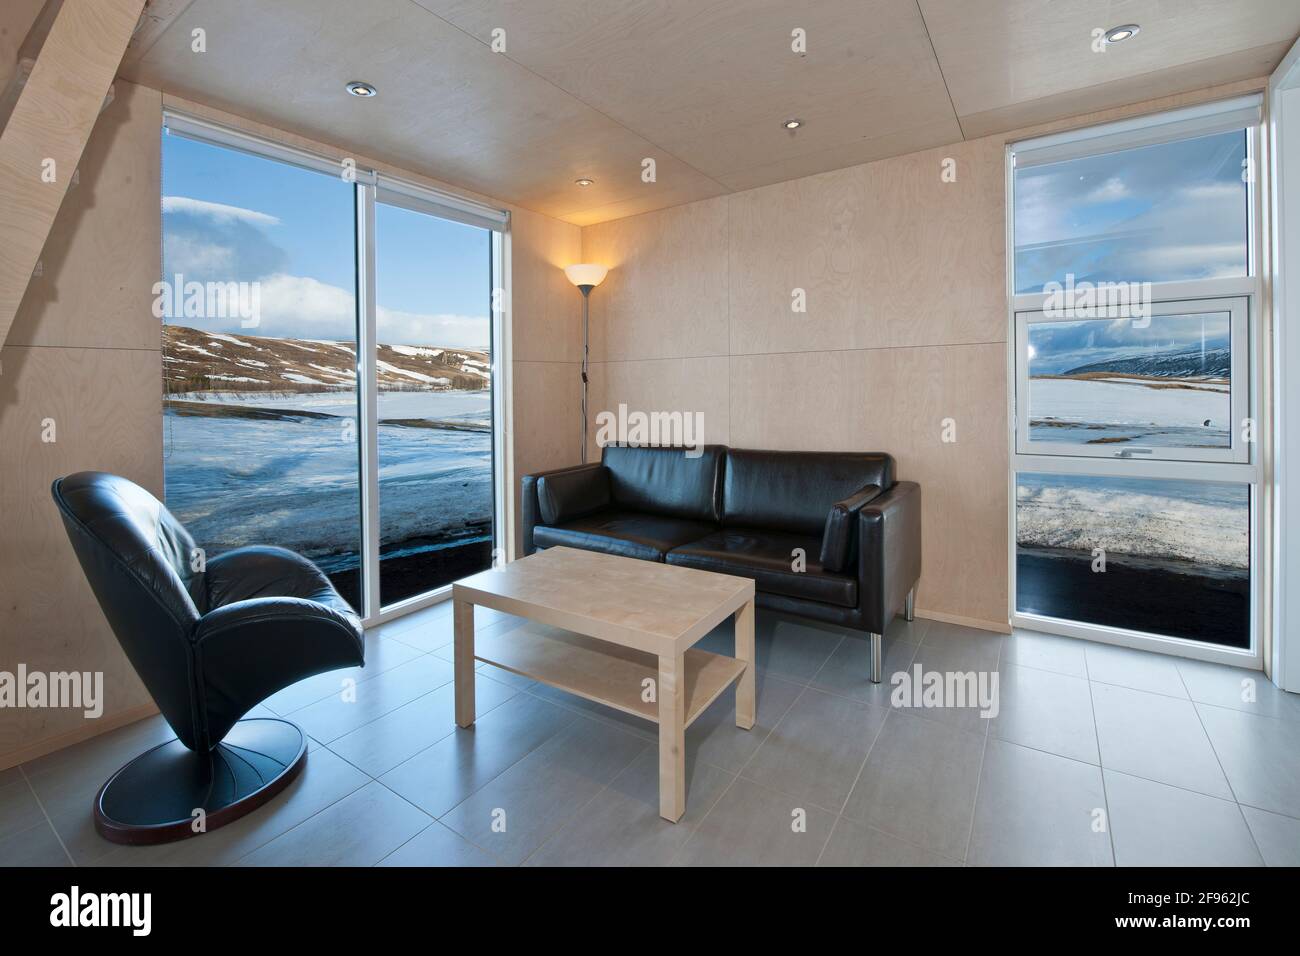 Intérieur d'une maison de vacances islandaise moderne Banque D'Images